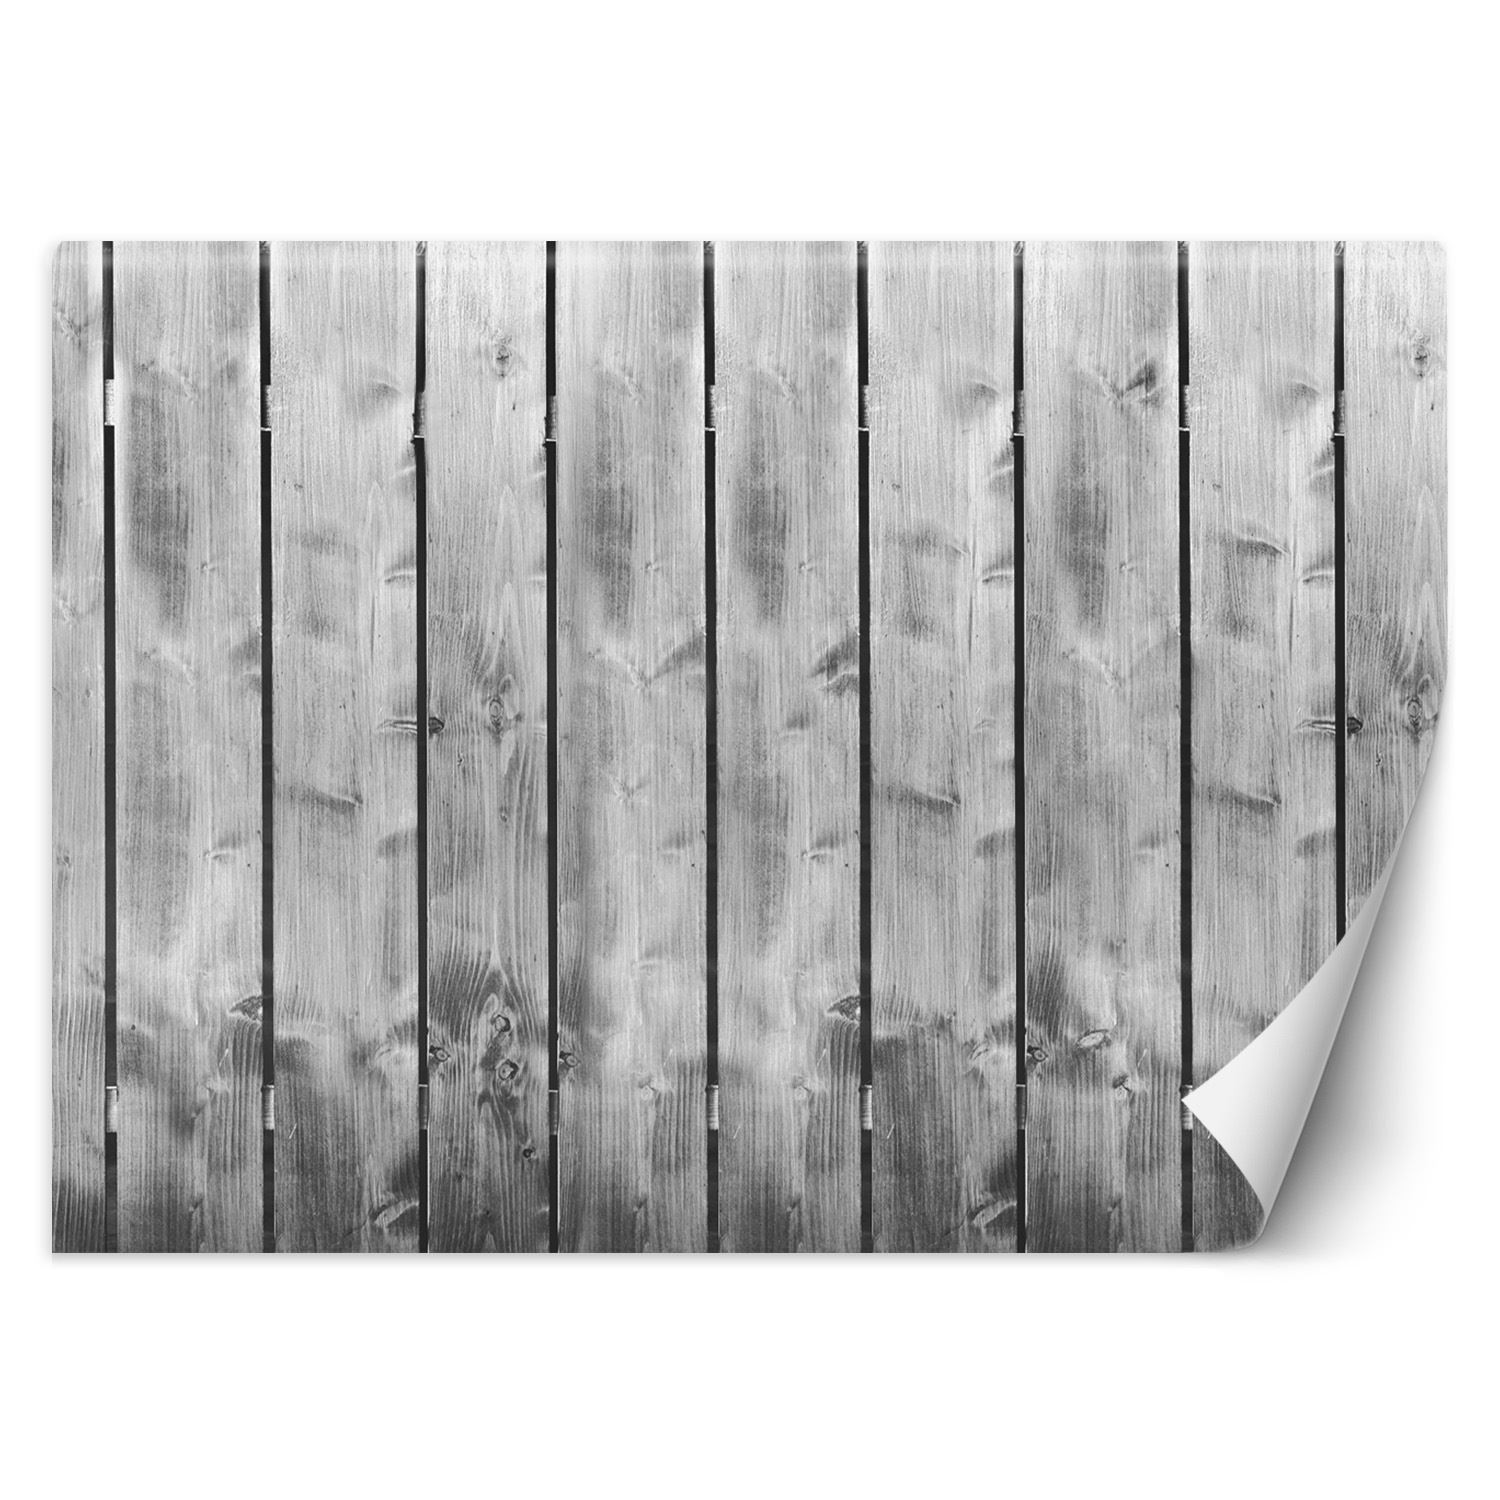 Trend24 – Behang – Plankpatroon – Behangpapier – Behang Woonkamer – Fotobehang – 450x315x2 cm – Incl. behanglijm